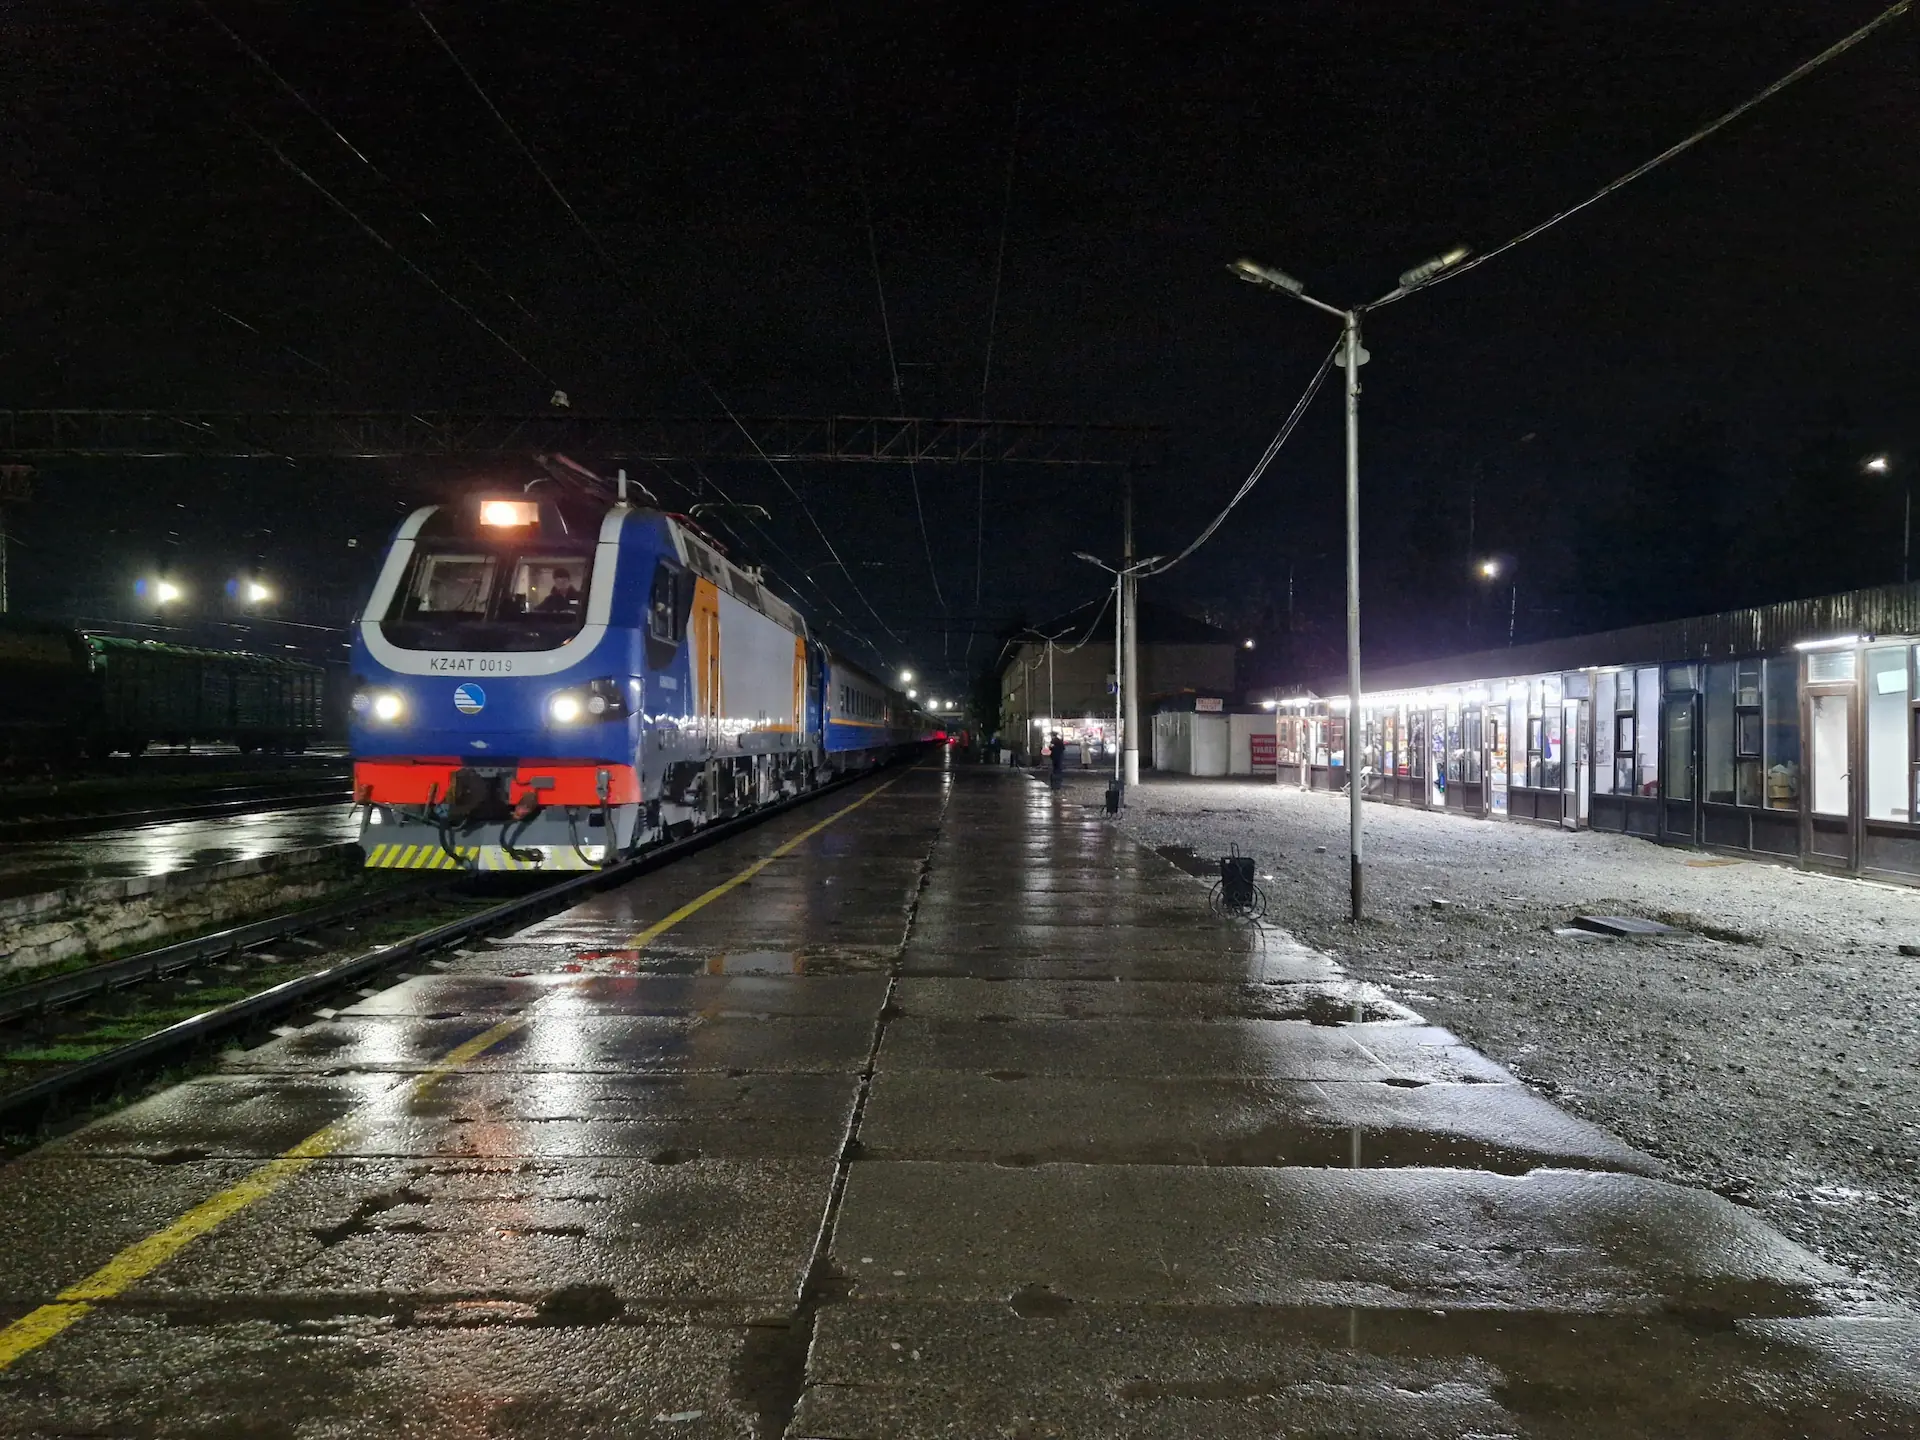 Il fait nuit. Le train arrive à la gare, où le sol est encore mouillé de la pluie.